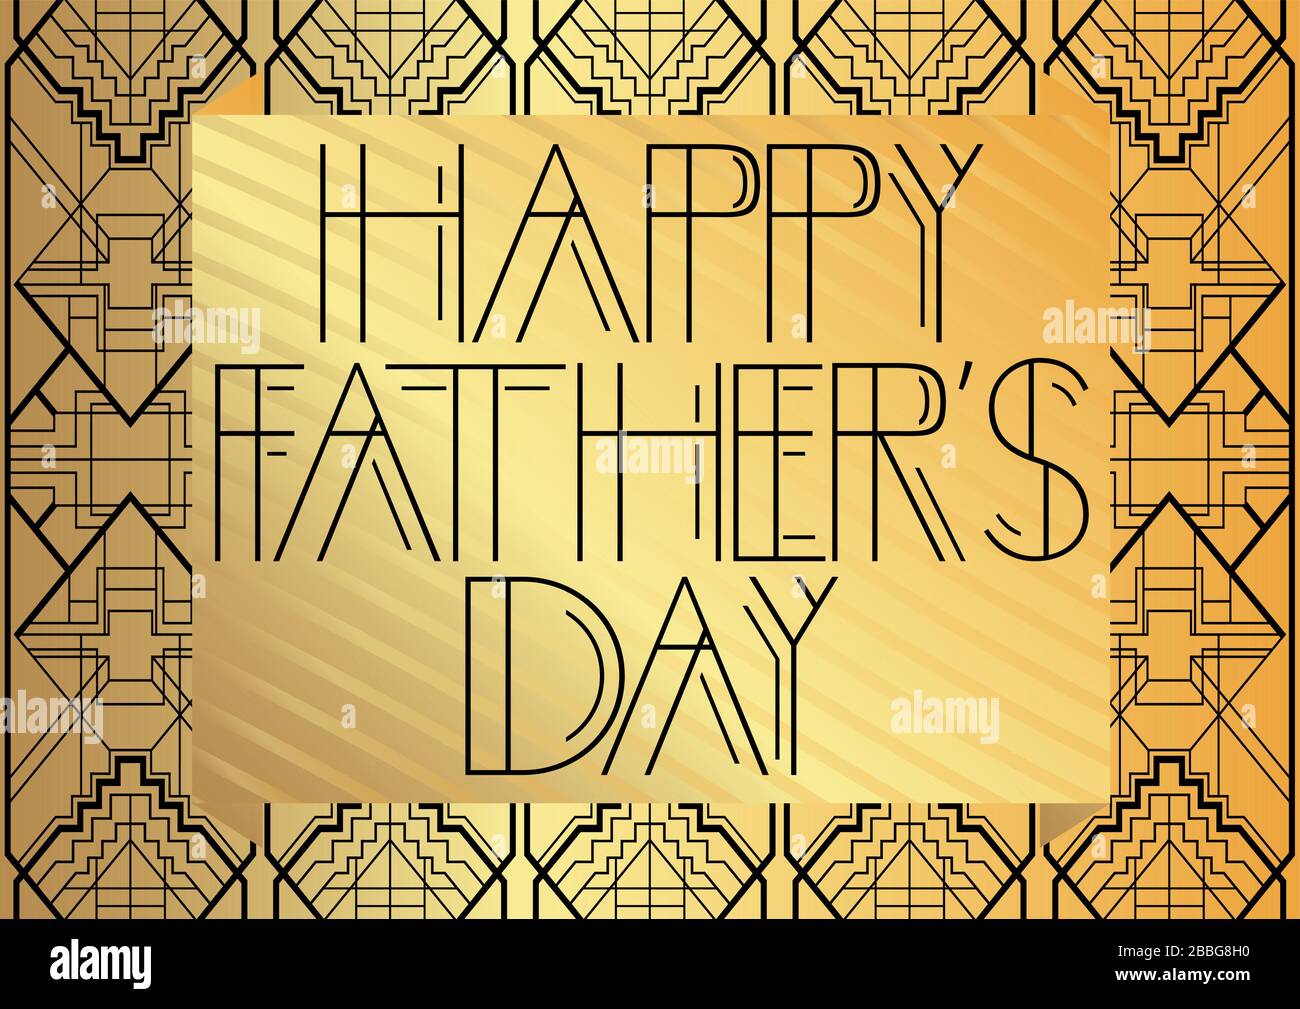 Art Deco Happy Father's Day Text. Dekorative Grußkarte, Schild mit Vintage-Buchstaben. Stock Vektor